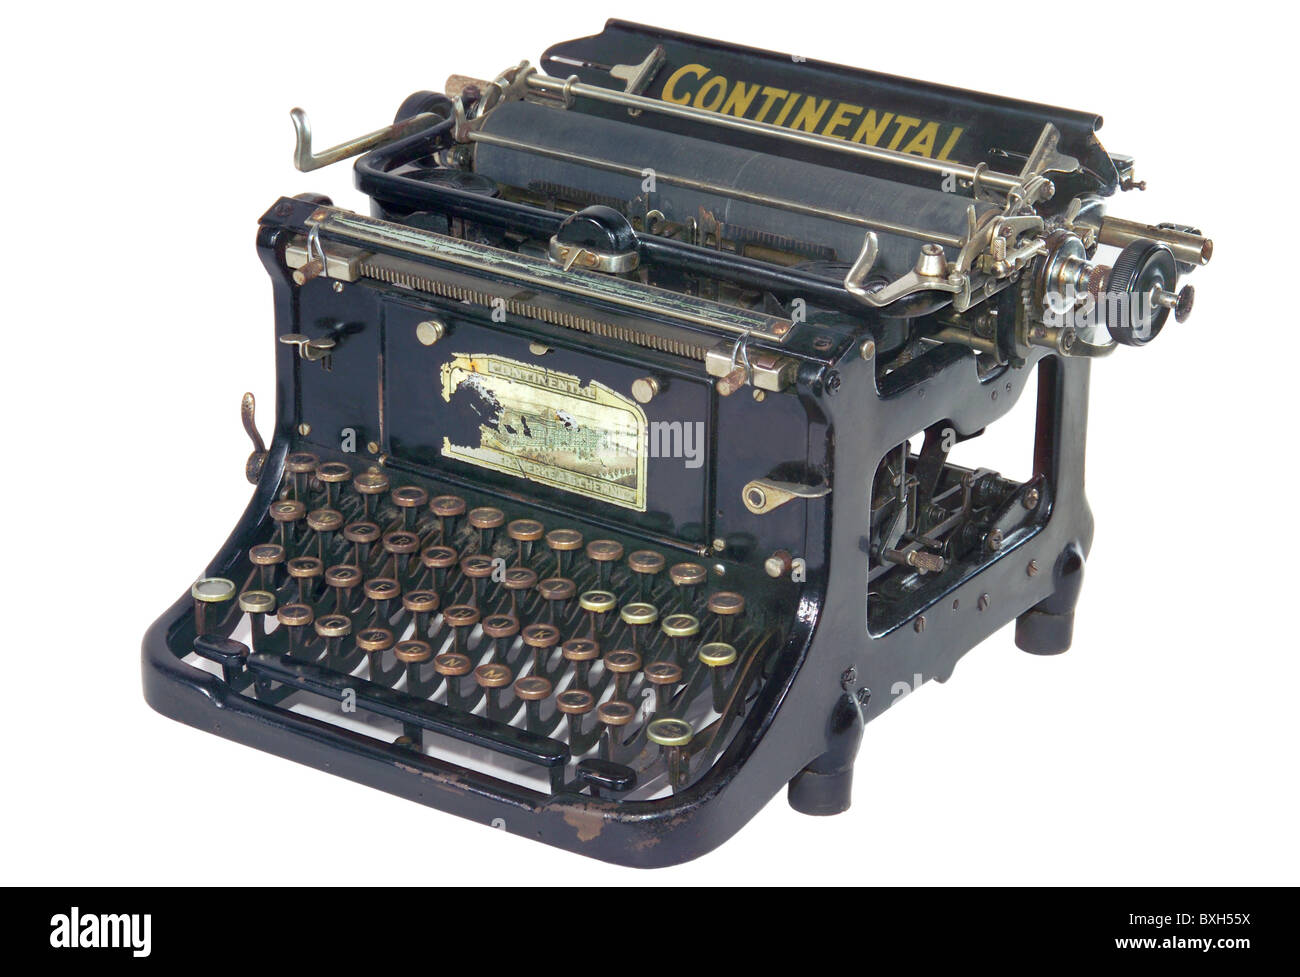 Continental typewriter immagini e fotografie stock ad alta risoluzione -  Alamy